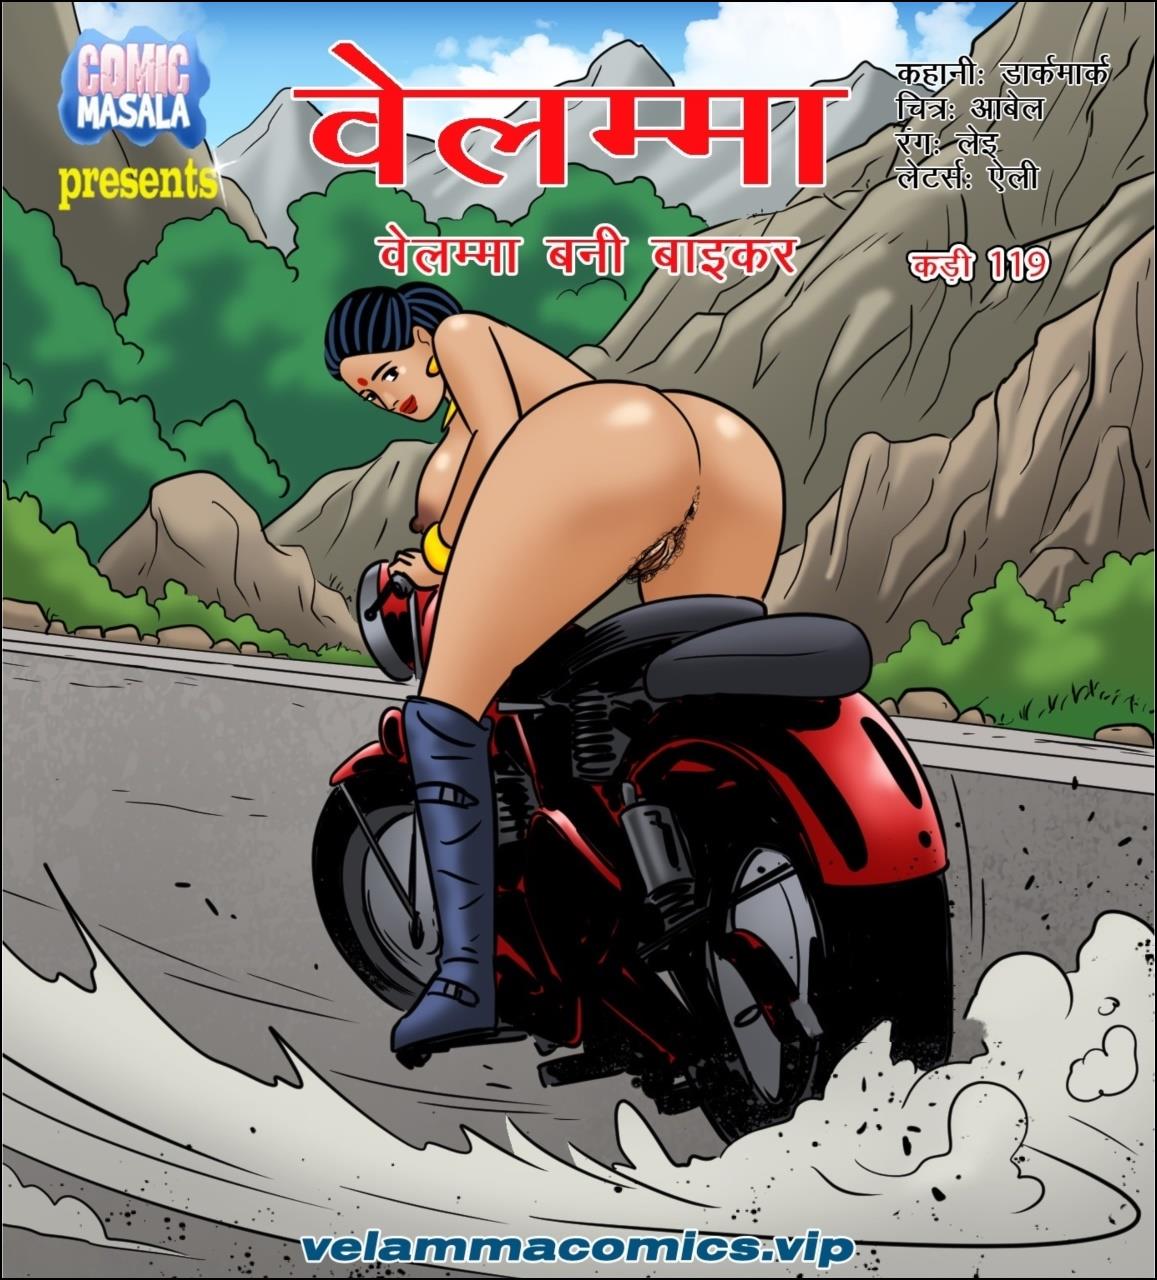 Porn comics in hindi free